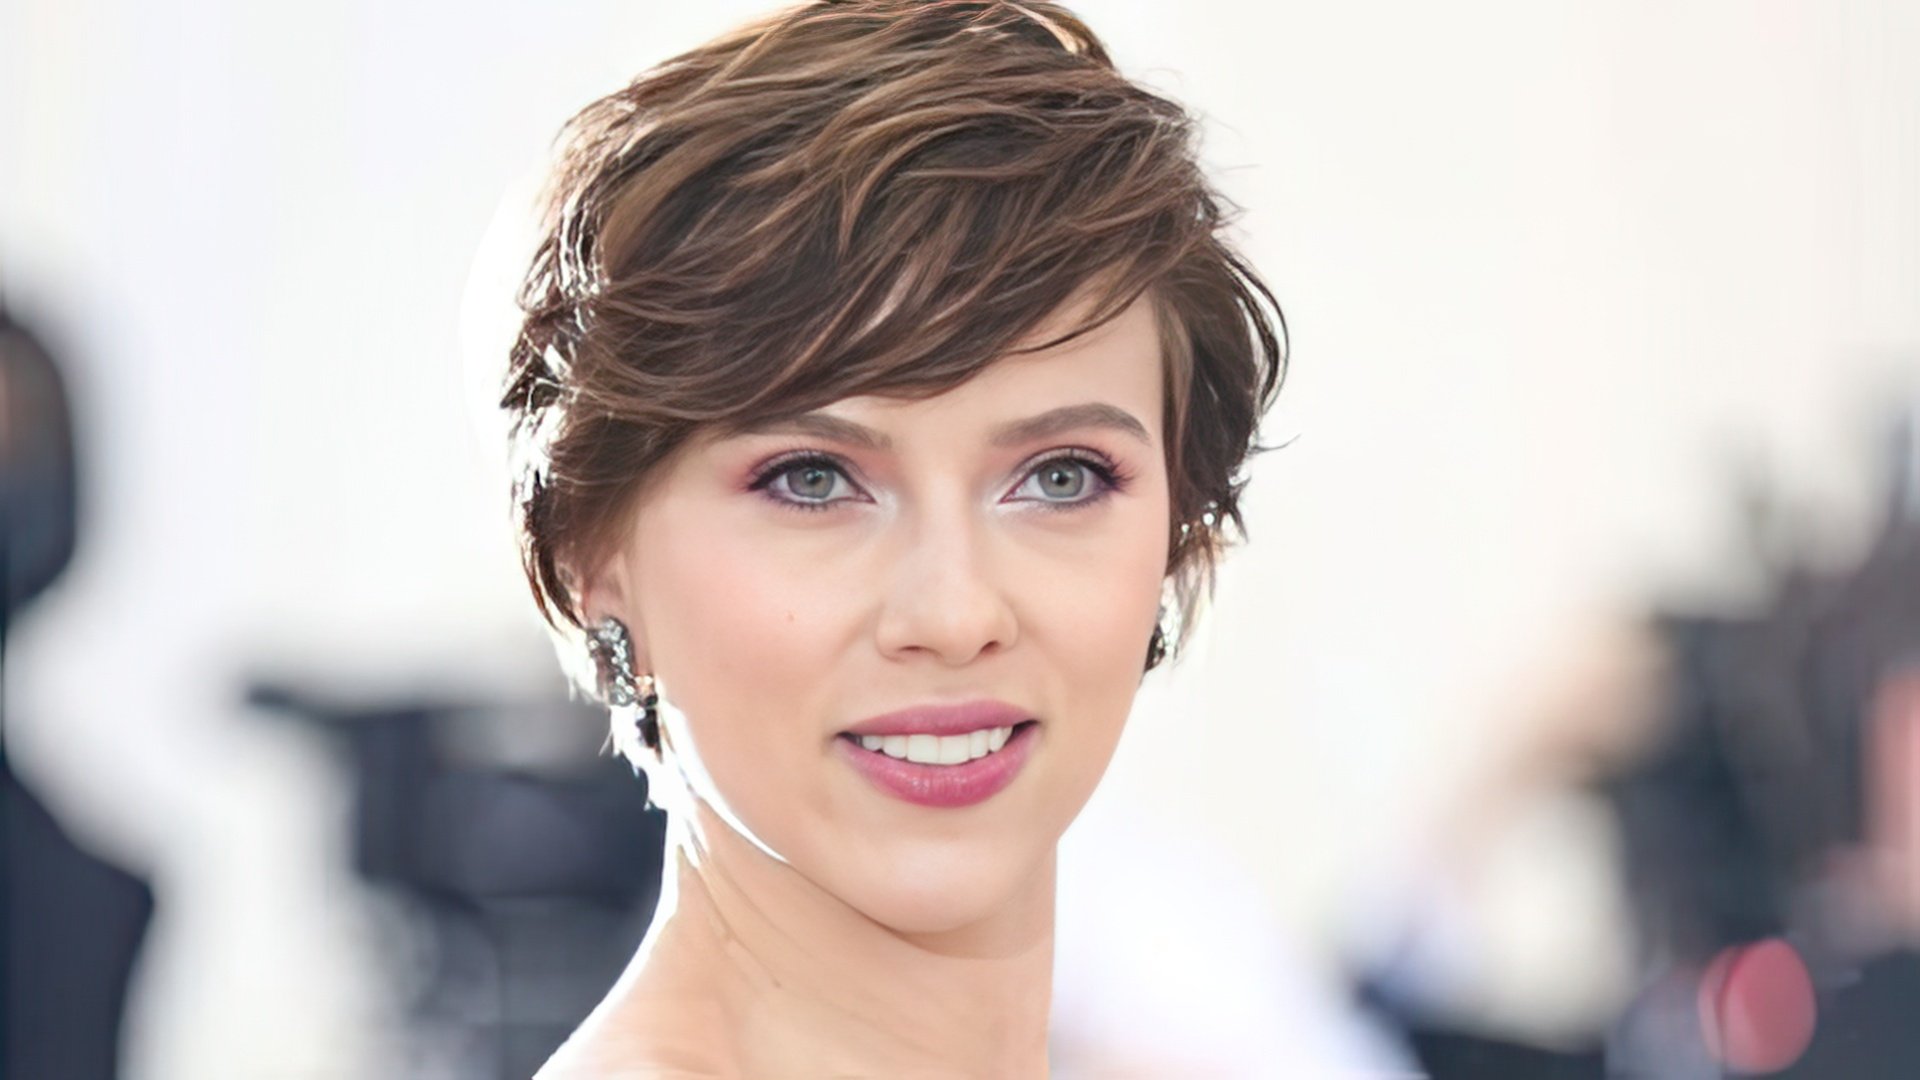 Scarlett Johansson cast in the role of a transgender woman